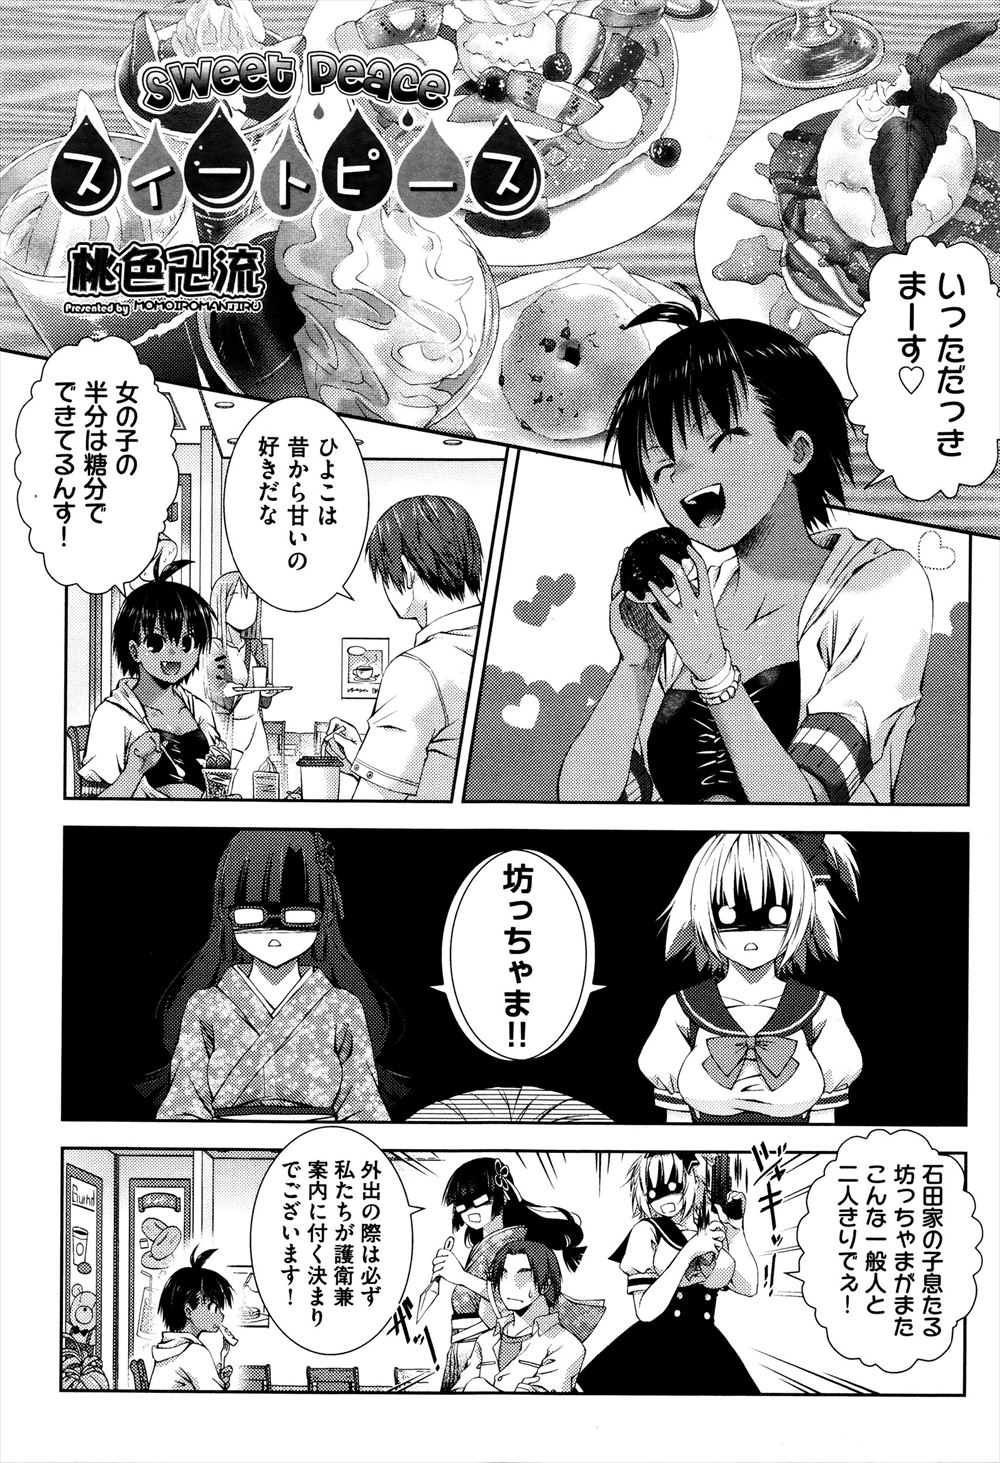 【エロ漫画】彼女が甘いものを食べ過ぎて心配なので尿検査をしたら、その光景が刺激的すぎて野外セックスしちゃいましたｗｗｗ